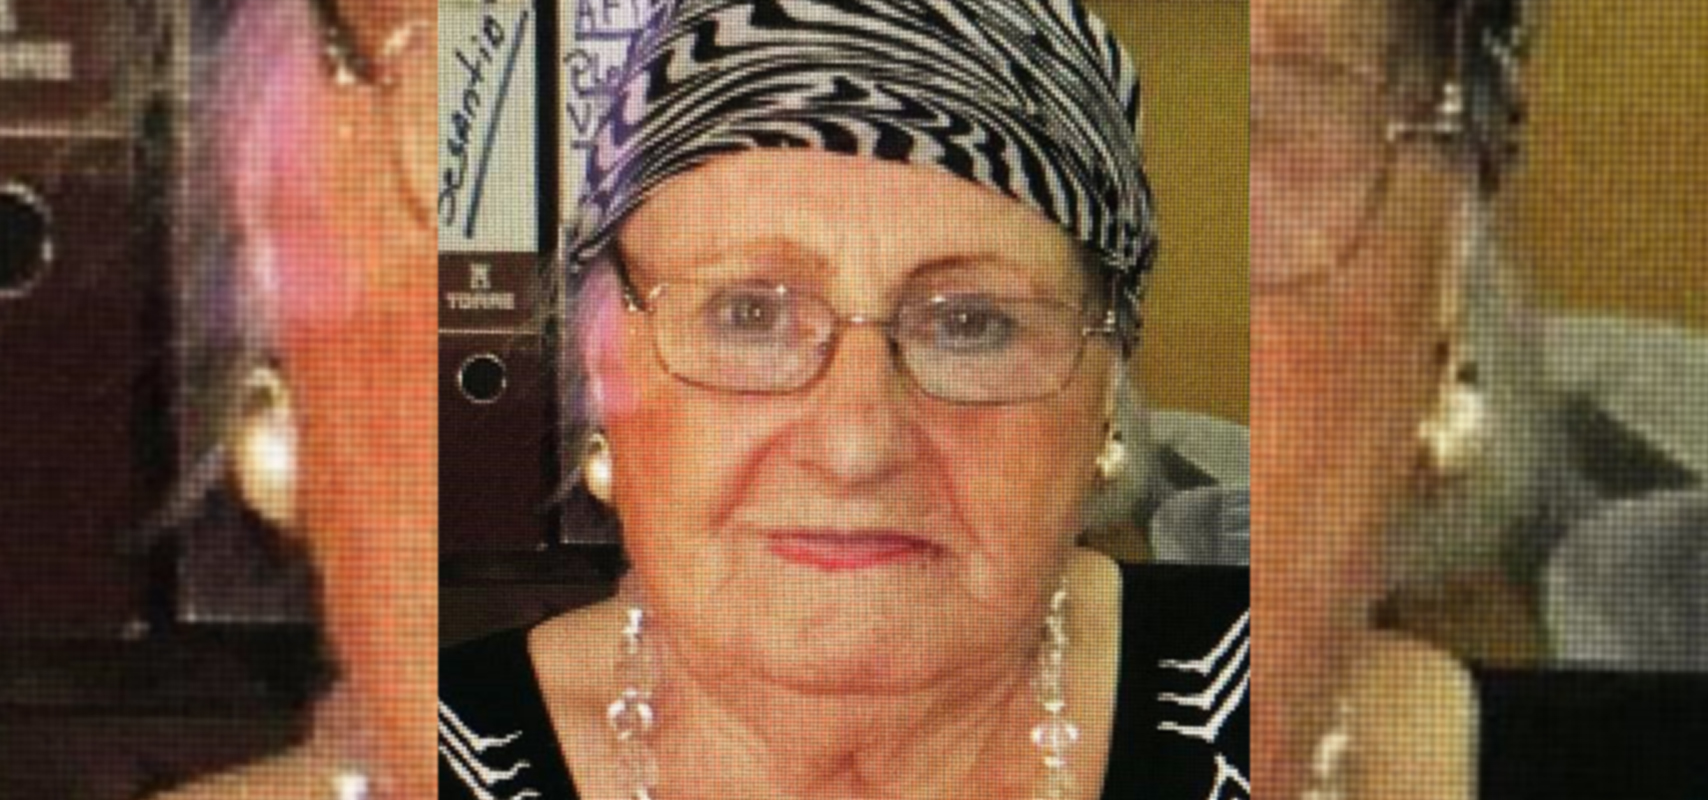 LOS ANDES: A la edad de 96 años falleció Yolanda Barbero Cerutti “Propietaria del Diario El Andino”